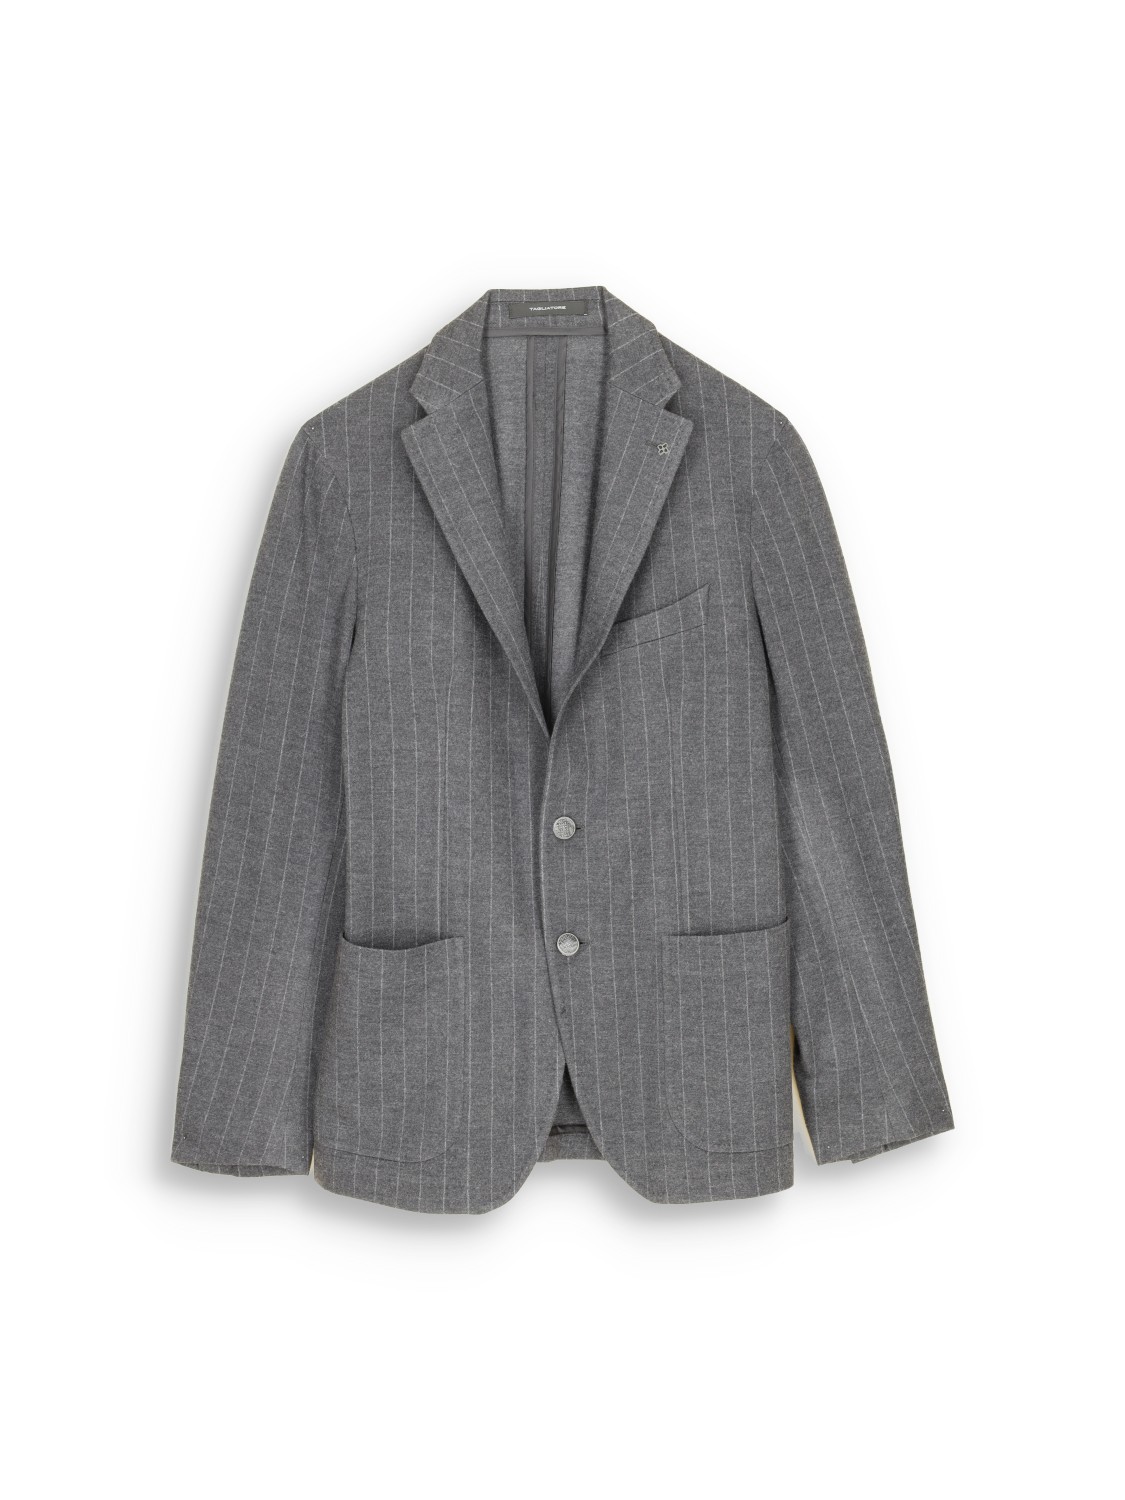 pinstripe suit with pure new wool – Nadelstreifen-Anzug aus Schurwoll-Mix 